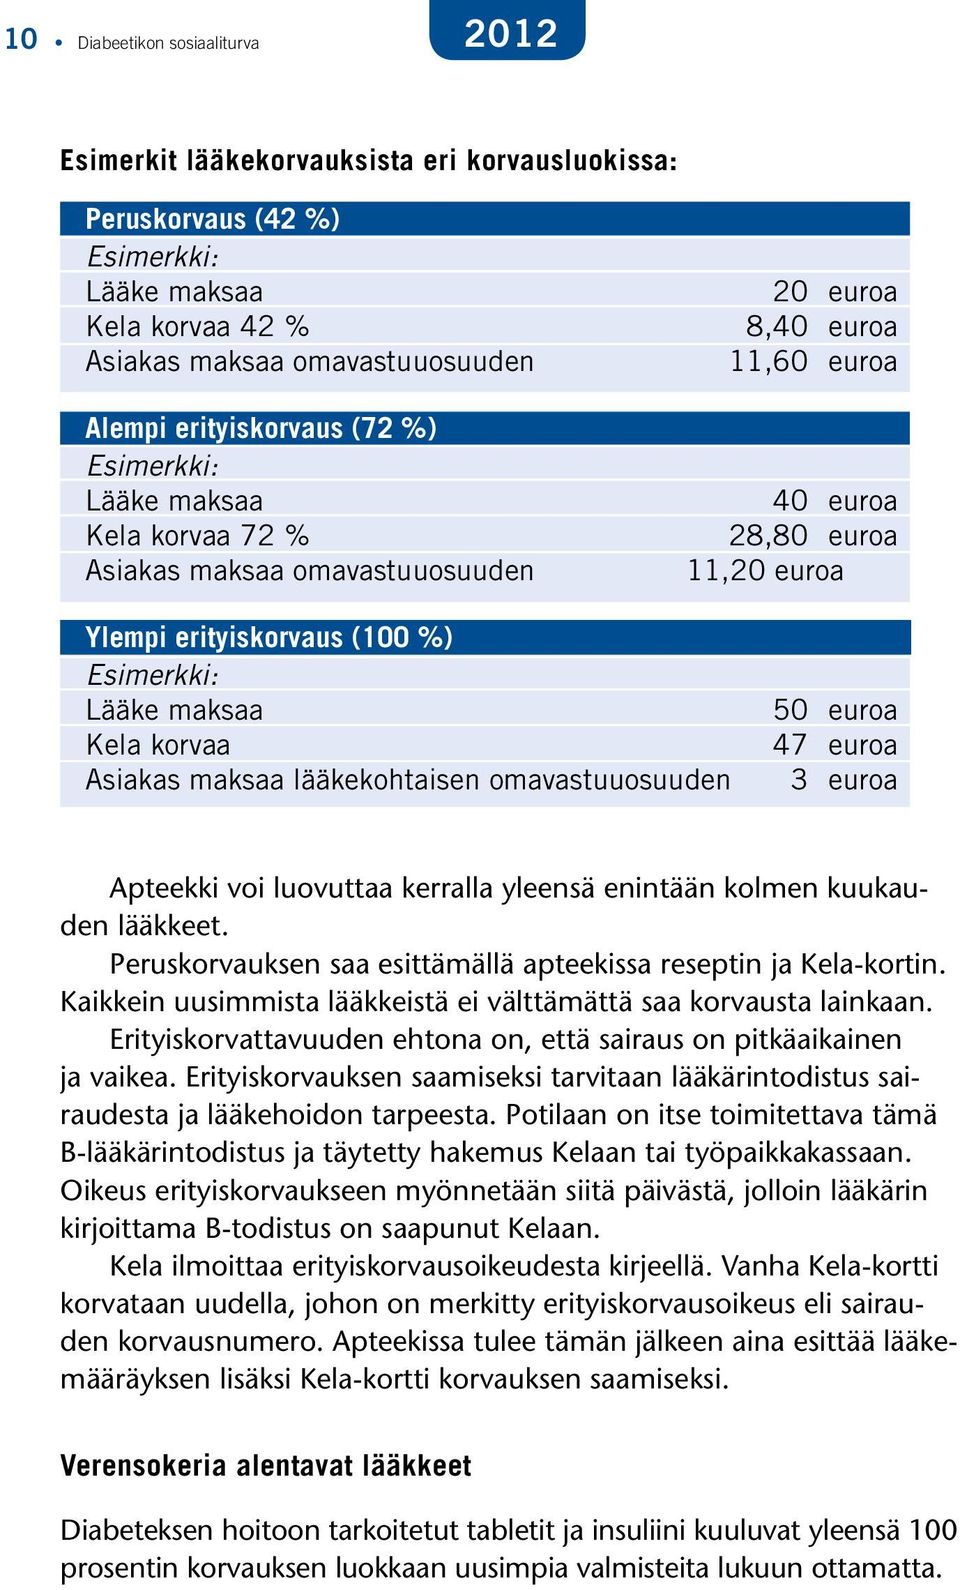 Kela korvaa Asiakas maksaa lääkekohtaisen omavastuuosuuden 50 euroa 47 euroa 3 euroa Apteekki voi luovuttaa kerralla yleensä enintään kolmen kuukauden lääkkeet.